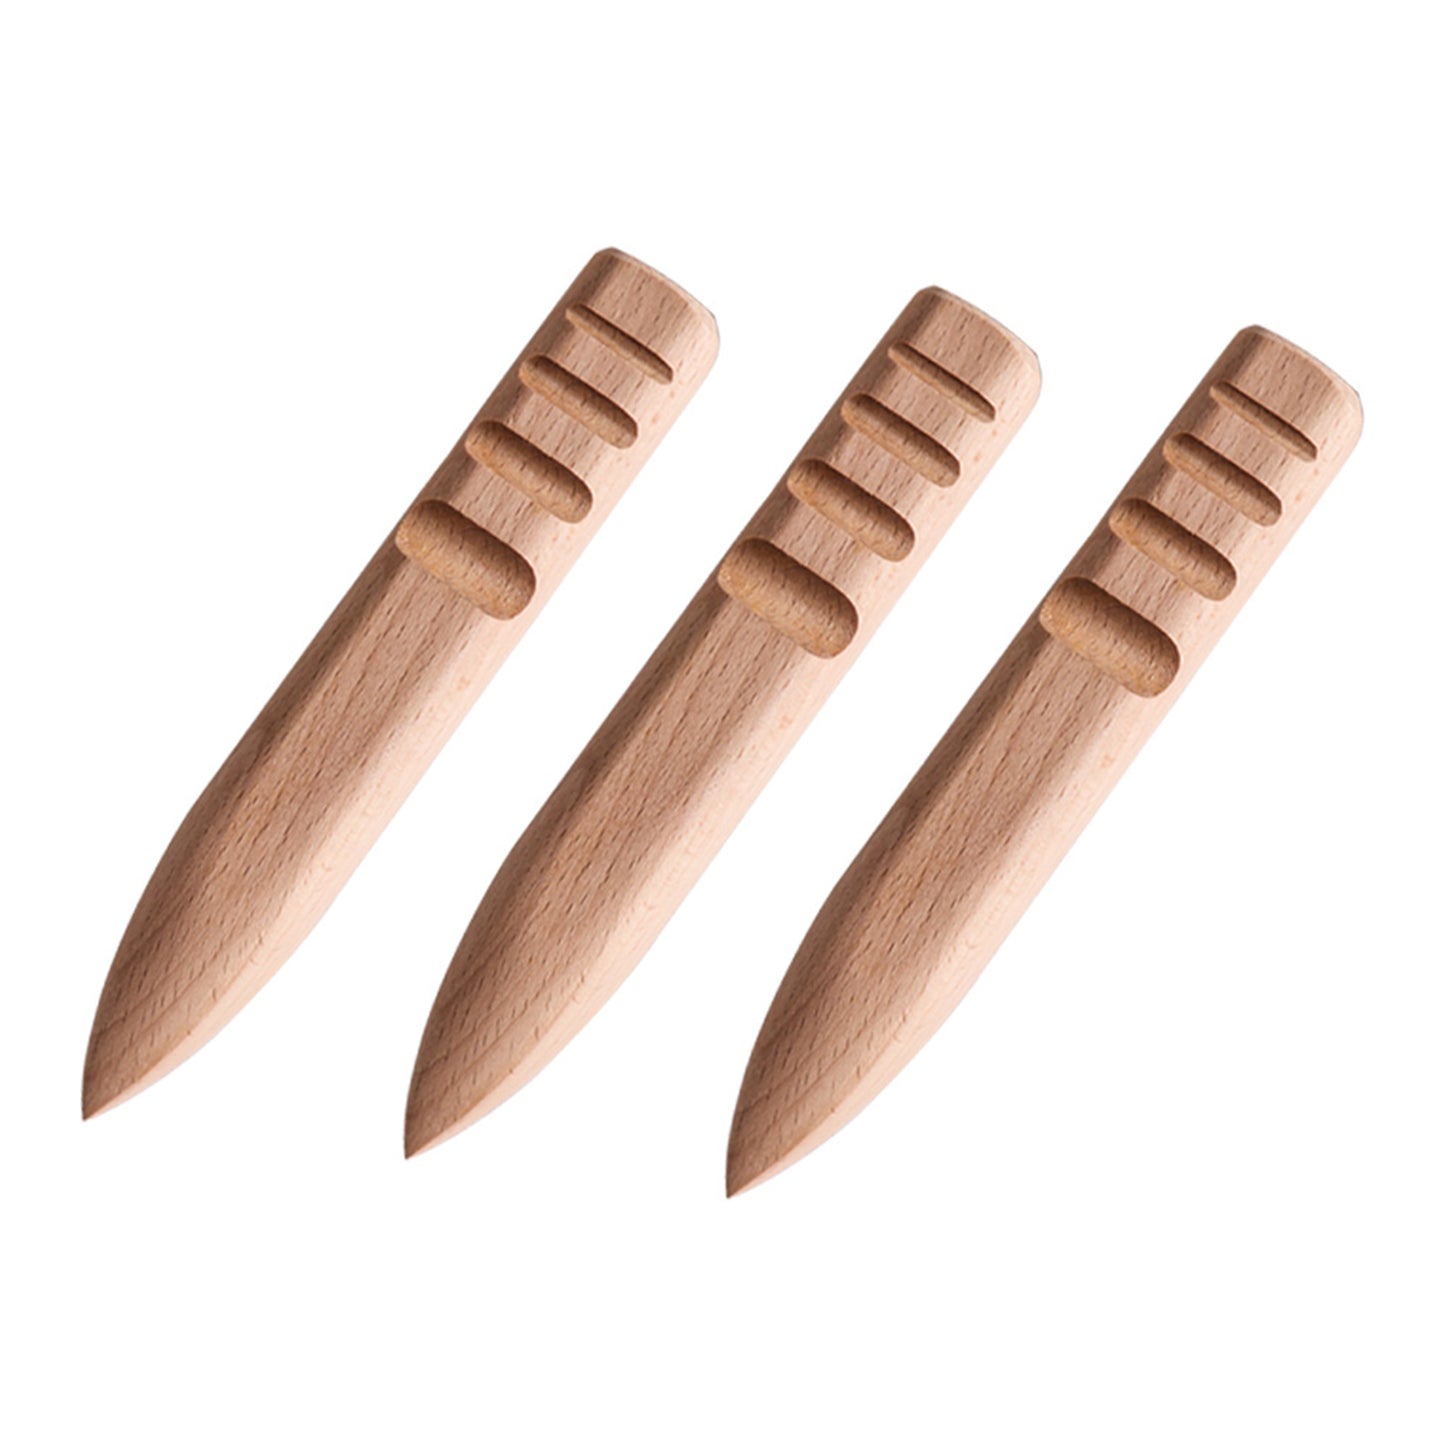 WUTA NEUE 1pcs Holz Leder Rand Burnisher Leathercraft Rand Slicker poliert Schleifwerkzeuge glatte Grooves 3-Typ erhältlich